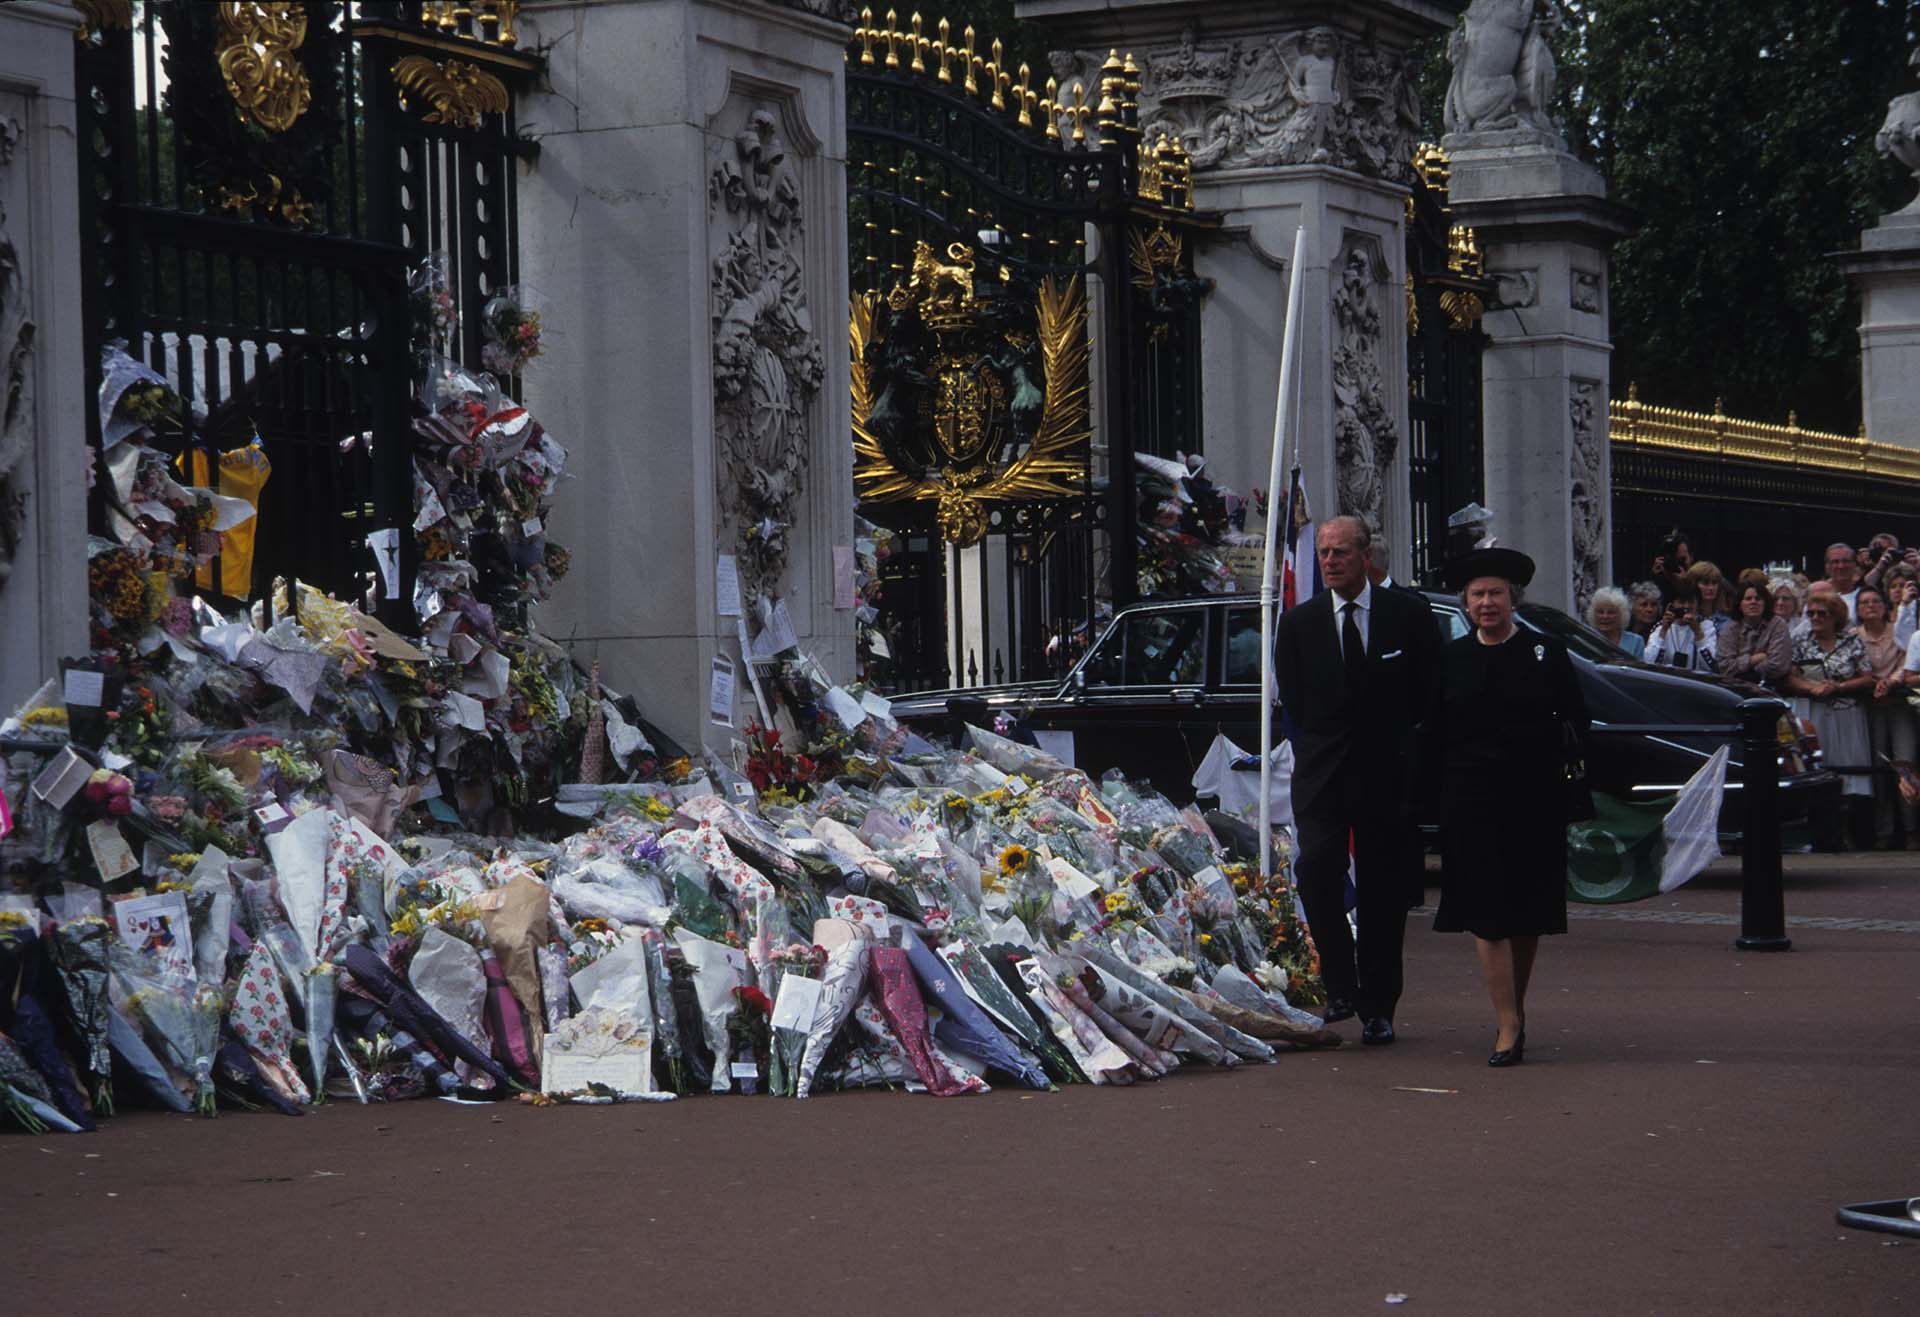 Isabel junto a su esposo observa las flores que la gente dejó para recordar a Diana (John Shelley Collection/Avalon/Getty Images)